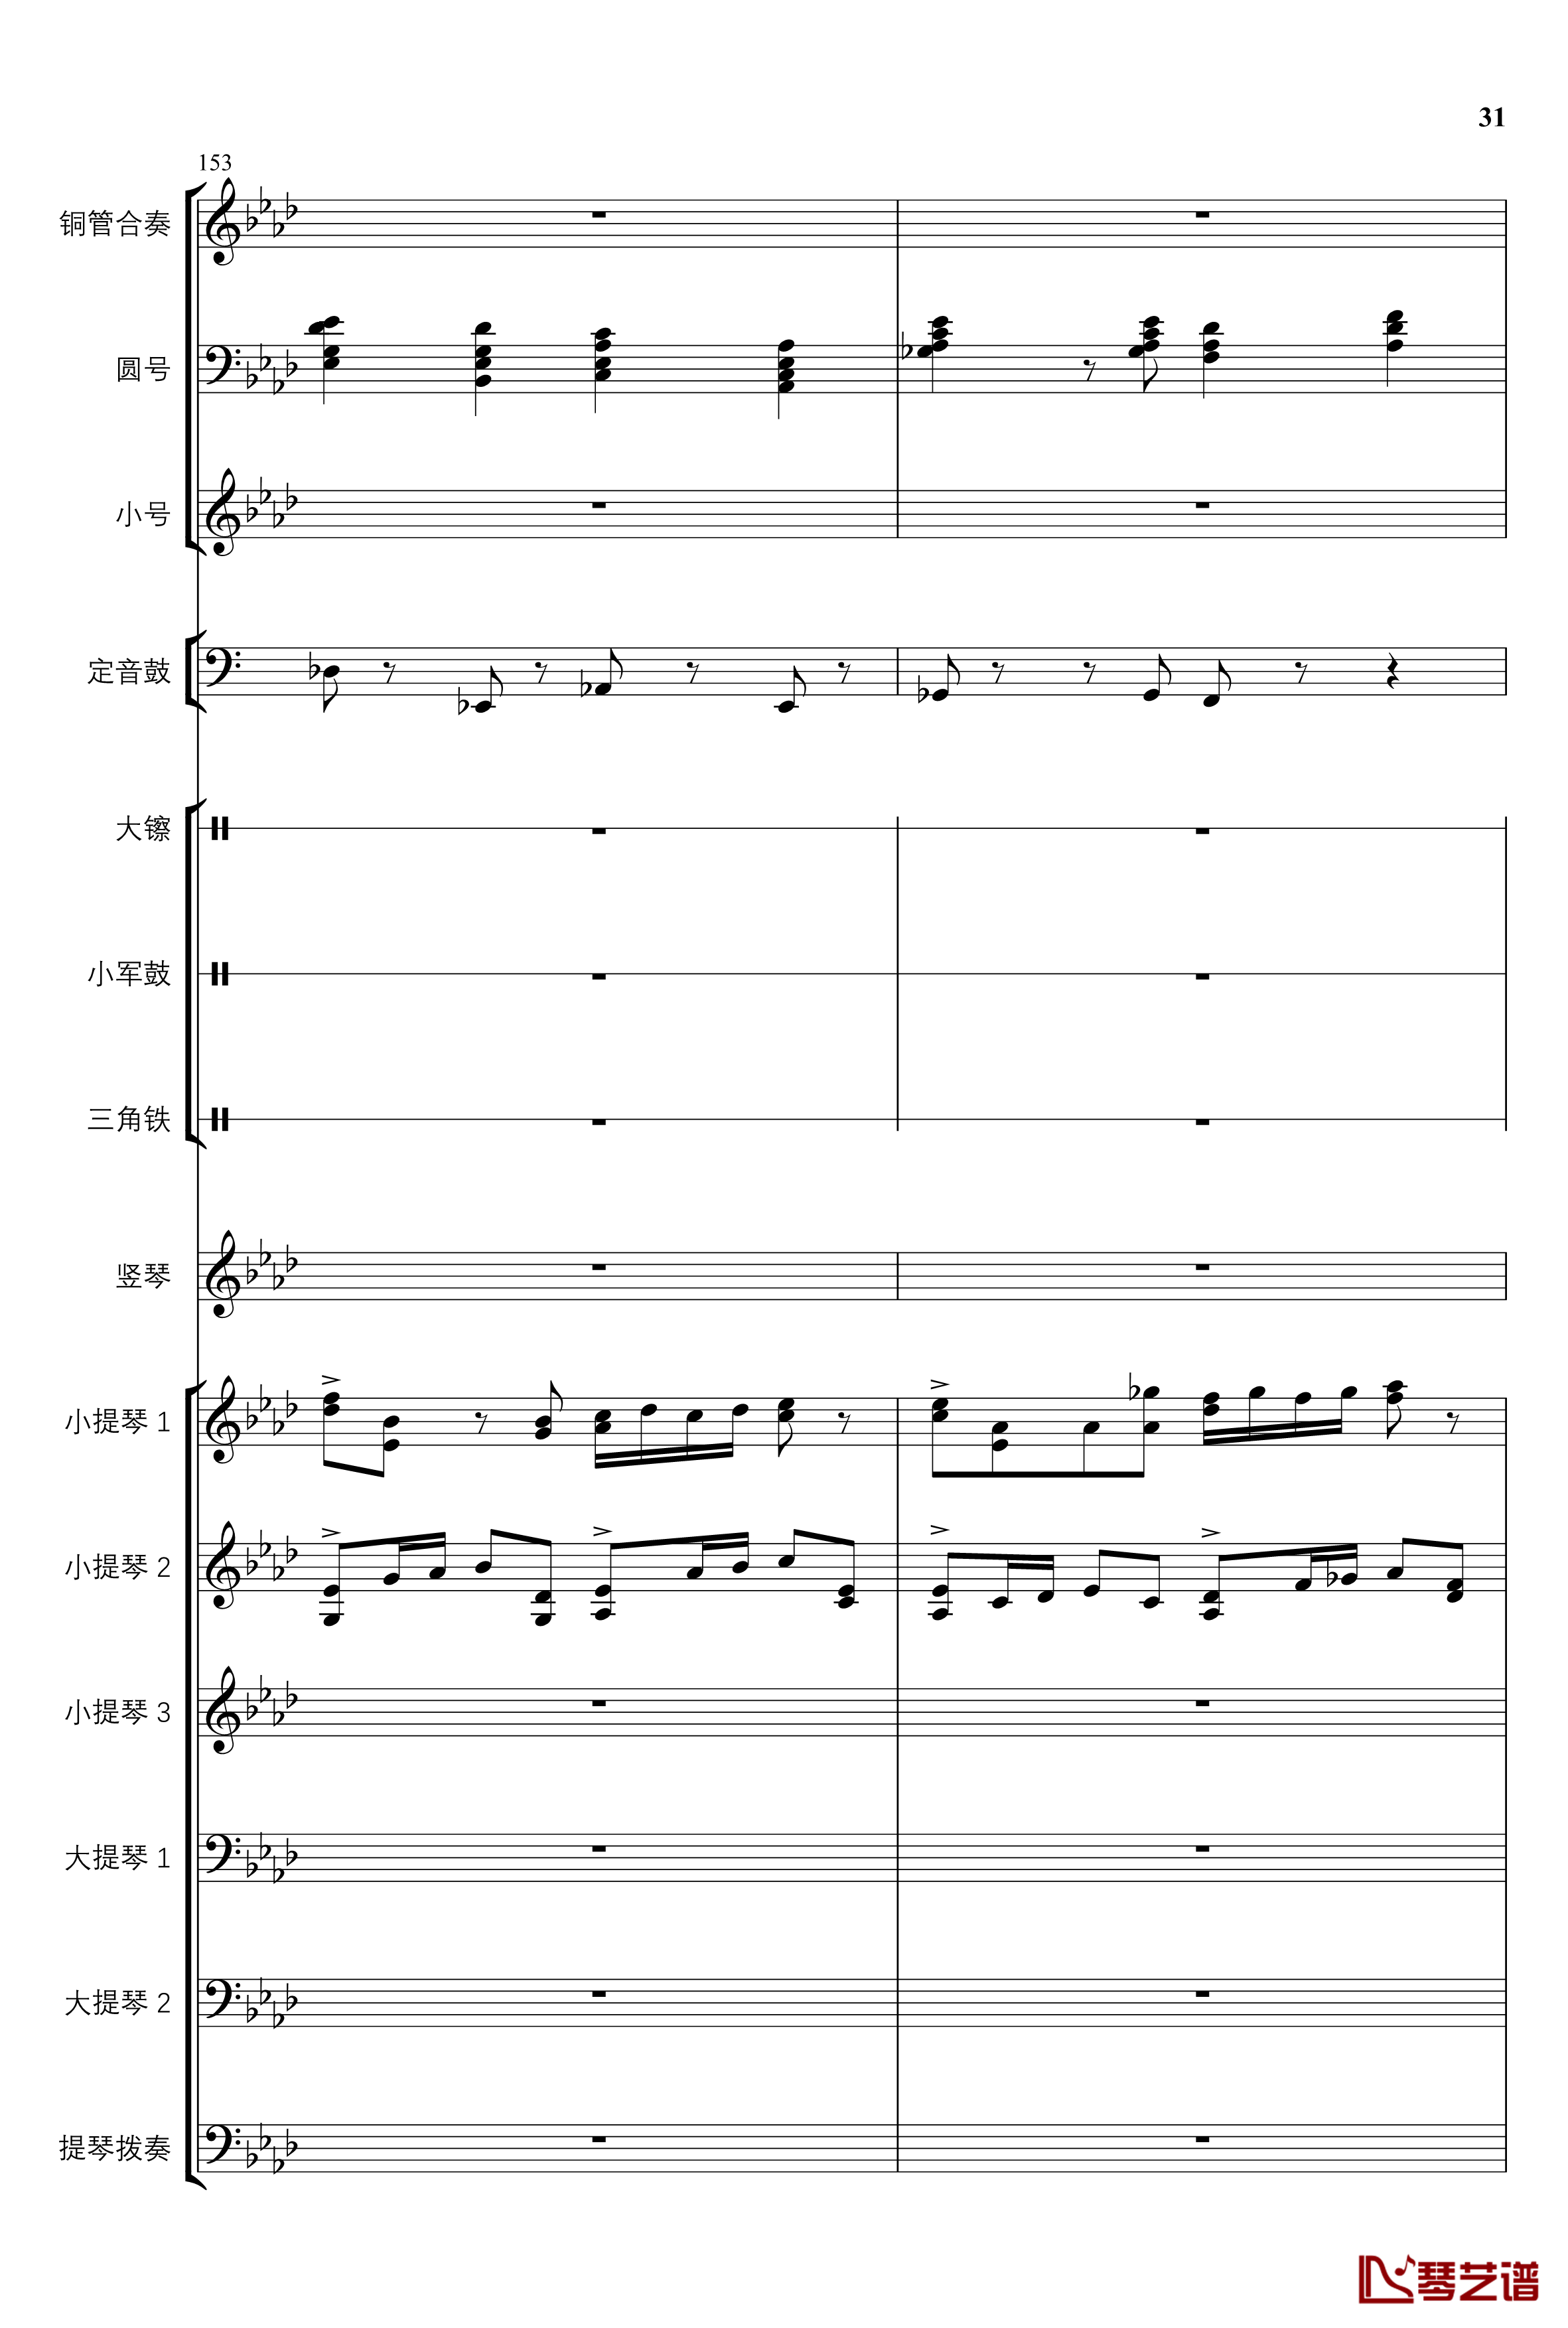 2013考试周的叙事曲钢琴谱-管弦乐重编曲版-江畔新绿31